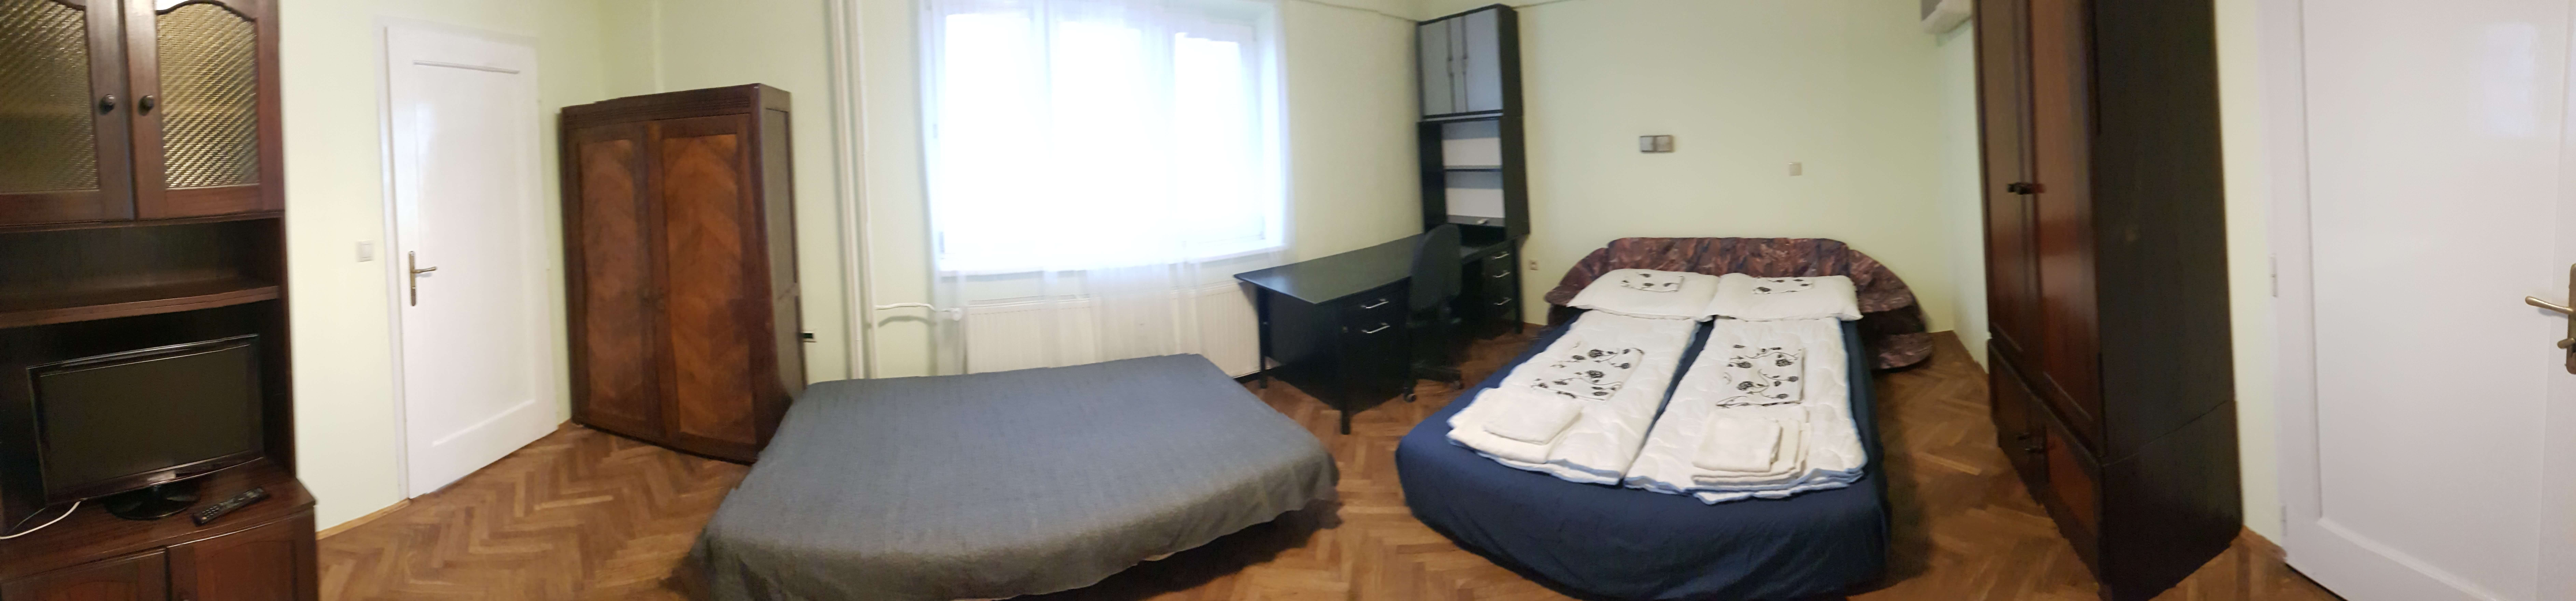 Prenajaté: Prenájom veľkého 2 izbového bytu 80m2, staré mesto, Šancová ulica 37, Bratislava, zariadený-25